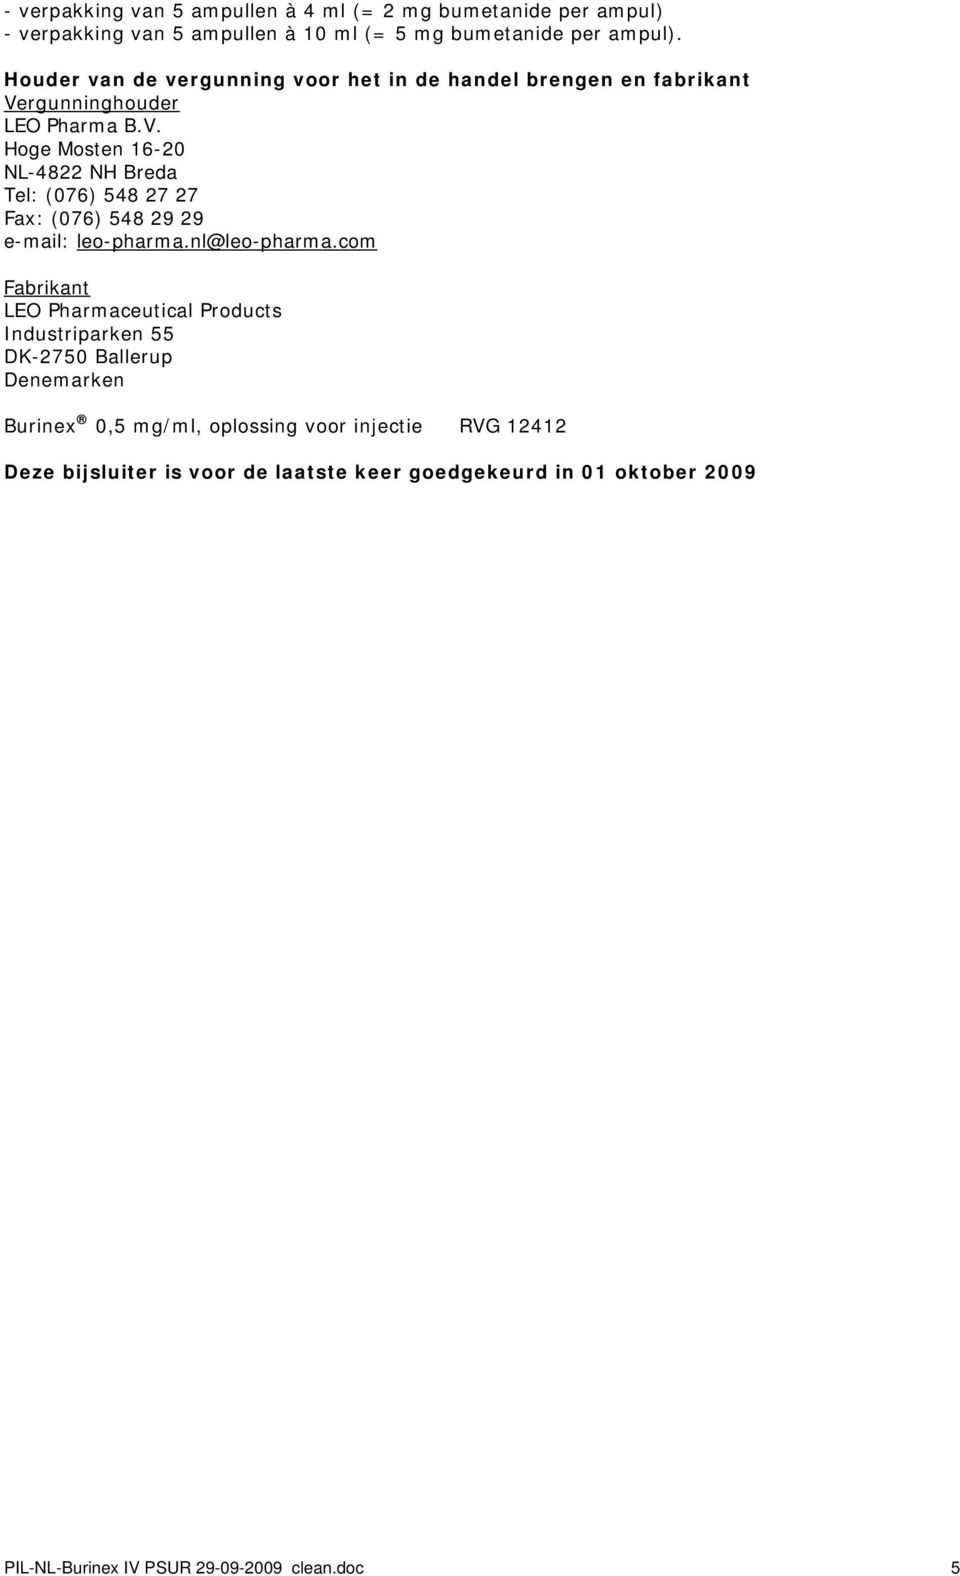 rgunninghouder LEO Pharma B.V. Hoge Mosten 16-20 NL-4822 NH Breda Tel: (076) 548 27 27 Fax: (076) 548 29 29 e-mail: leo-pharma.nl@leo-pharma.